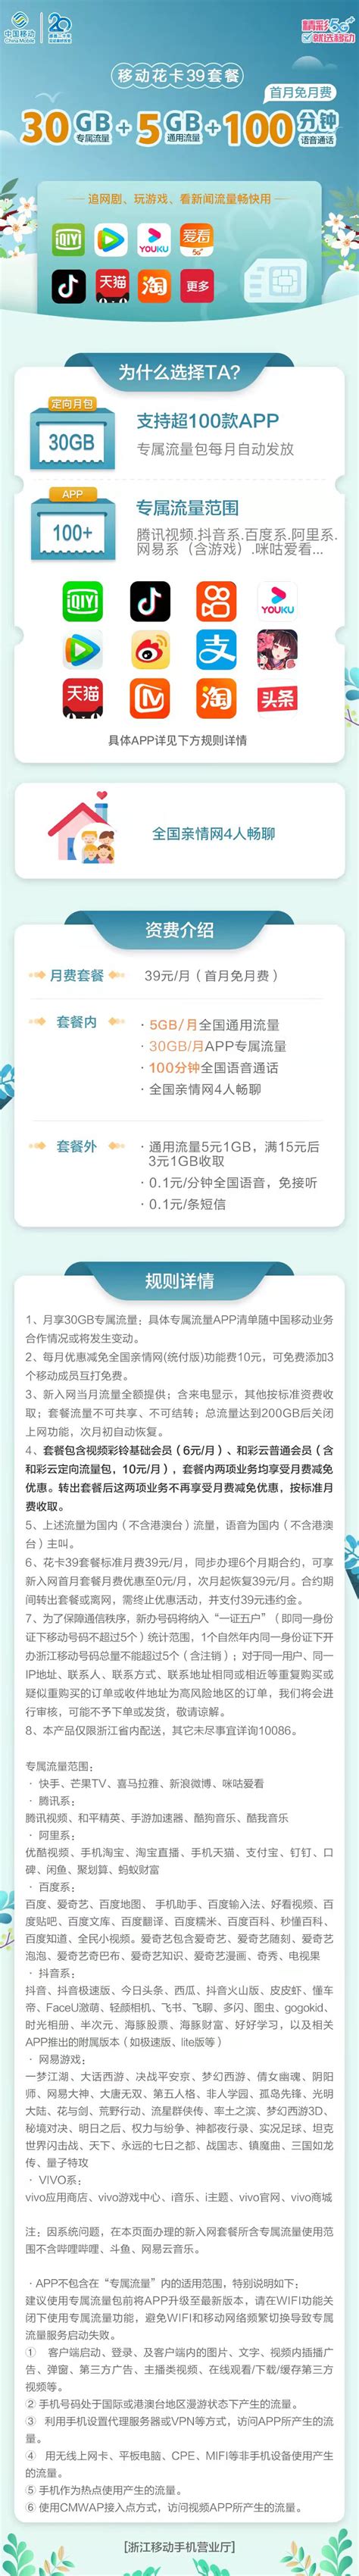 湘潭全域旅游惠民年卡预售通道开启 前500名仅需69元 - 湘潭 - 华声文旅 - 华声在线